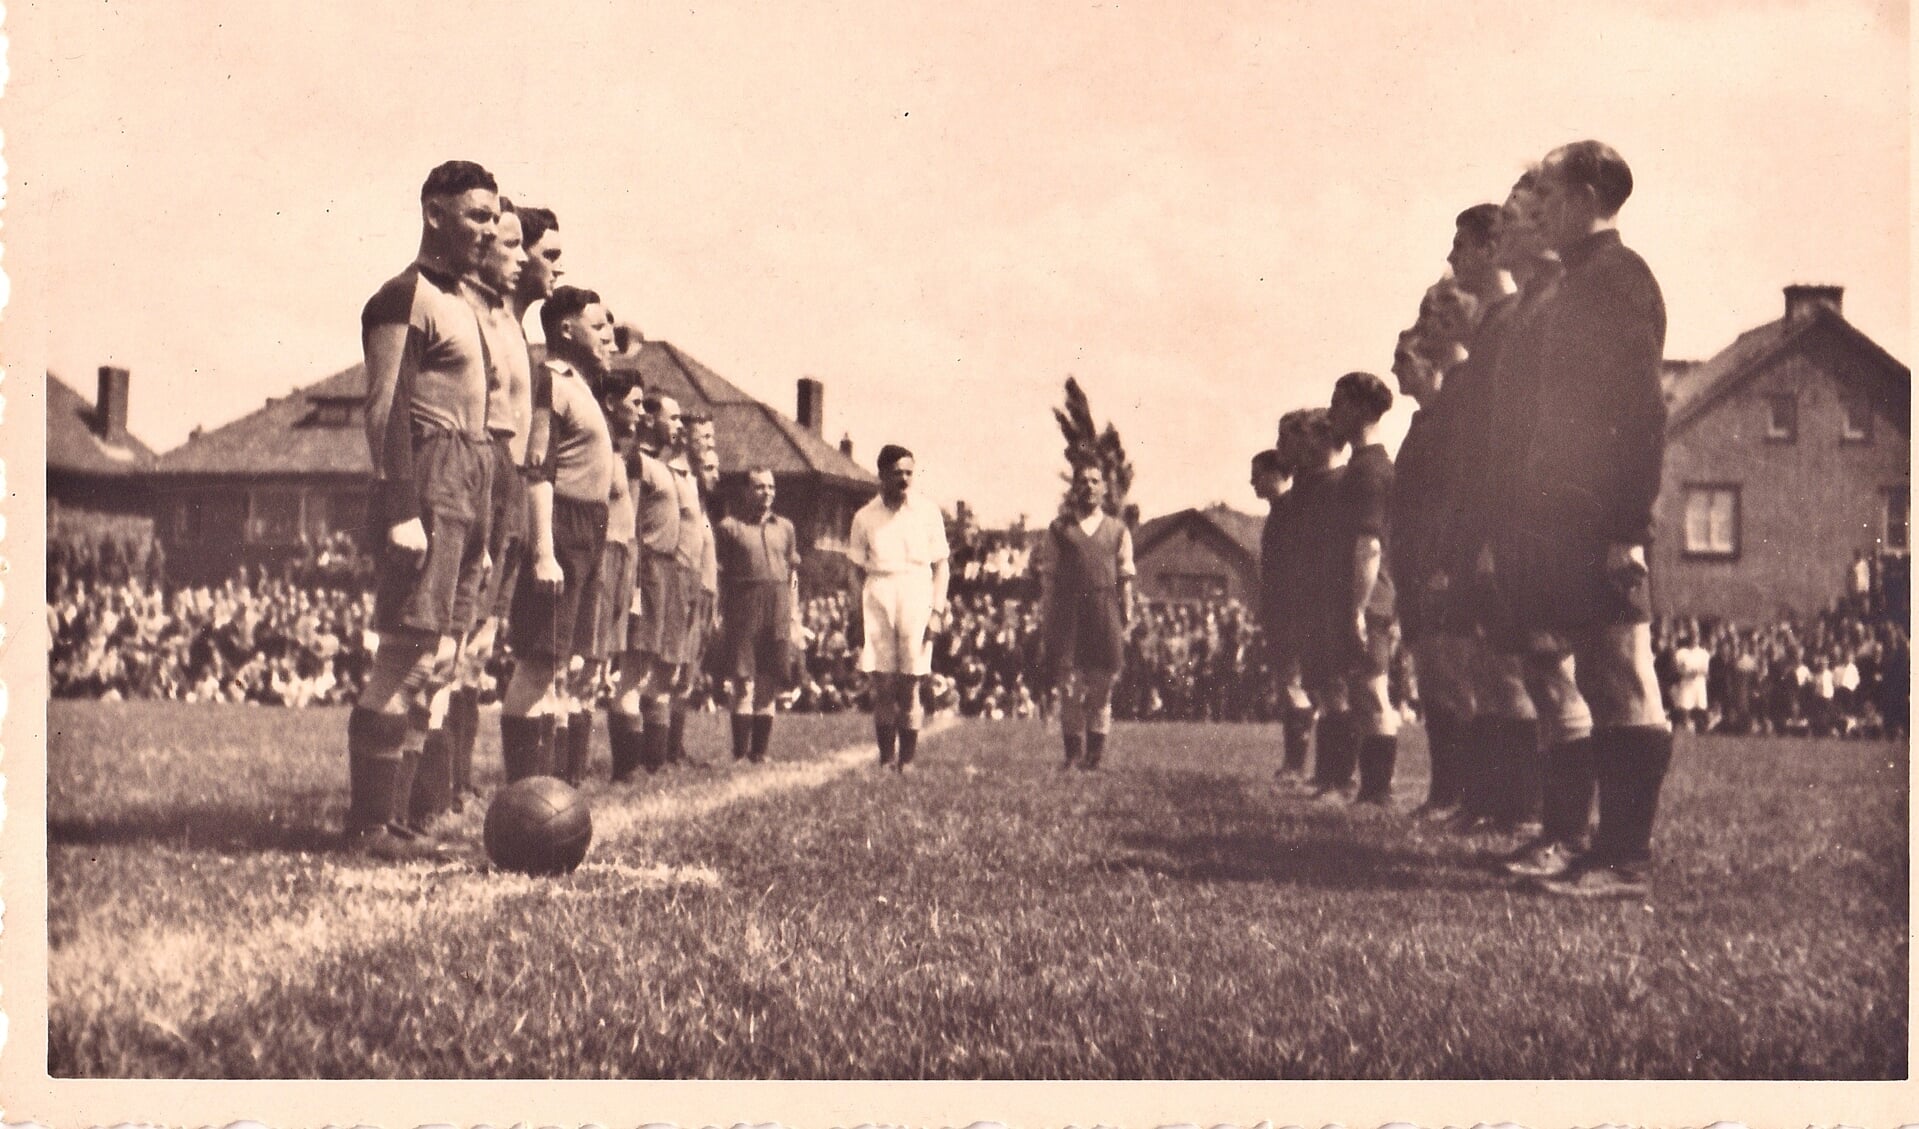 Op 3 juni 1945 speelde het Engelse landleger een voetbalwedstrijd tegen de Engelse luchtmacht op het veld van ASC.